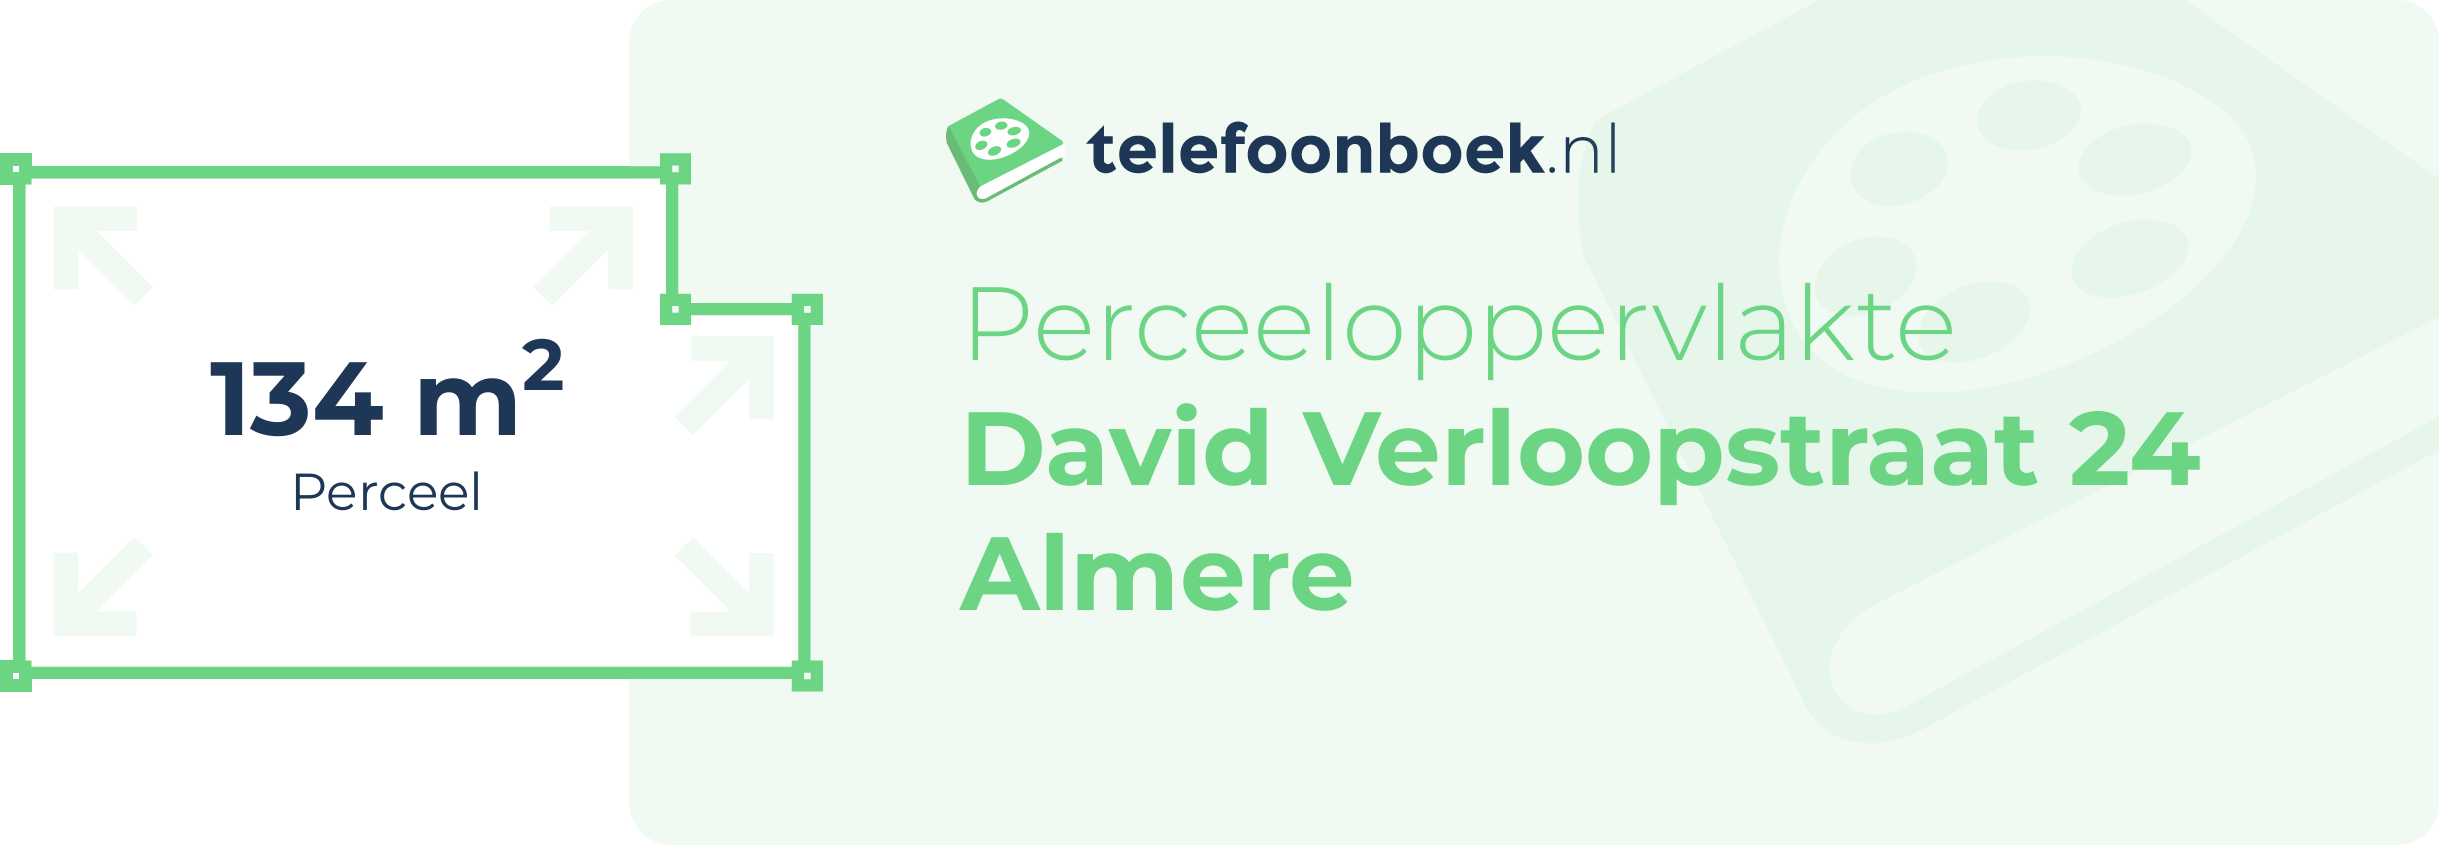 Perceeloppervlakte David Verloopstraat 24 Almere